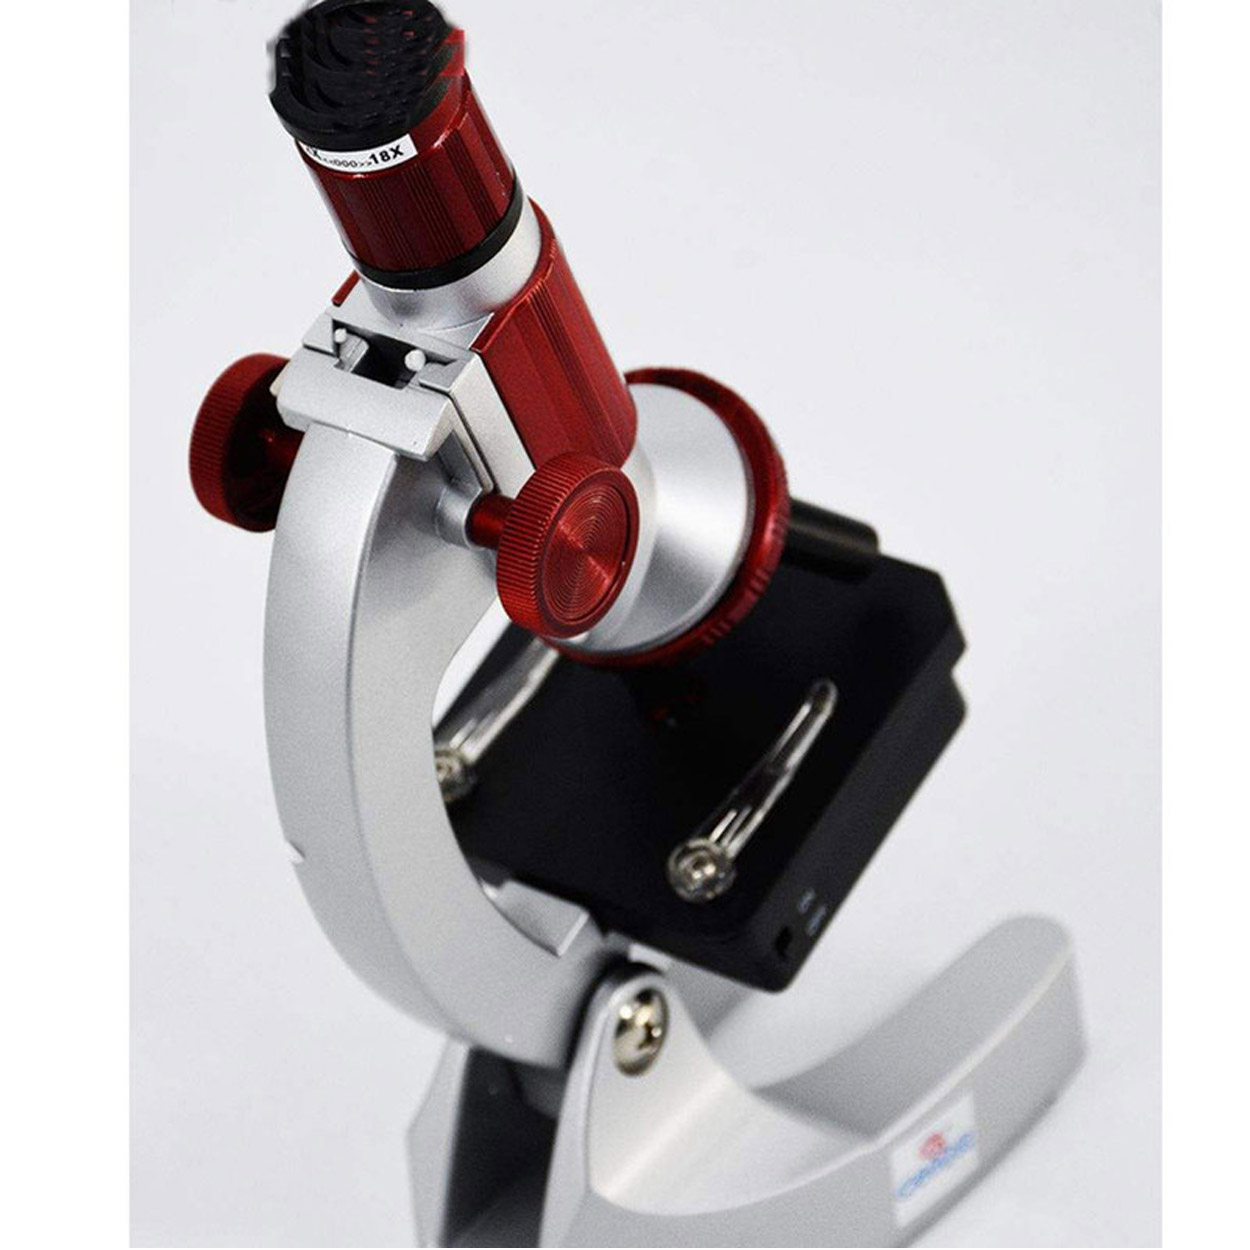 میکروسکوپ کامار مدل CMR 900x New